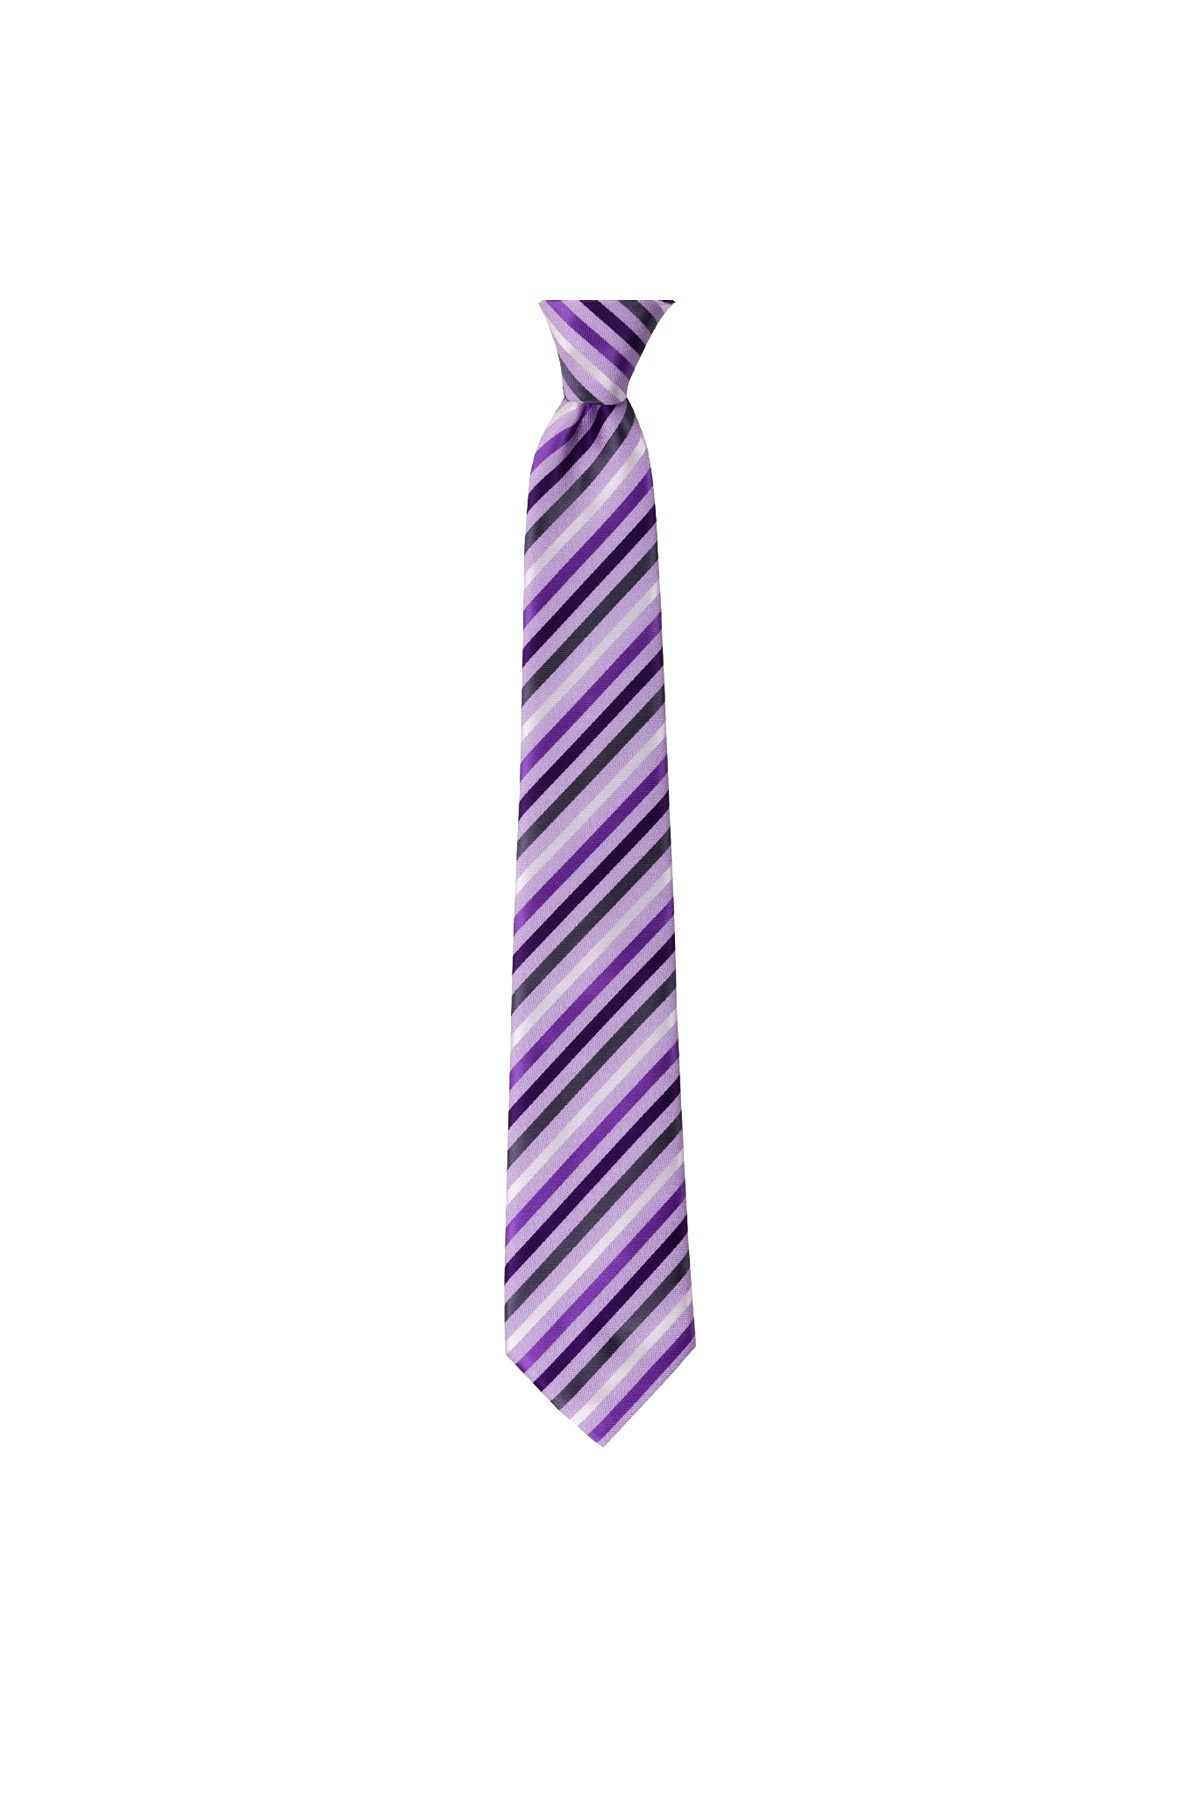 Çok çizgili 8 cm genişliğinde klasik kravat - Lila